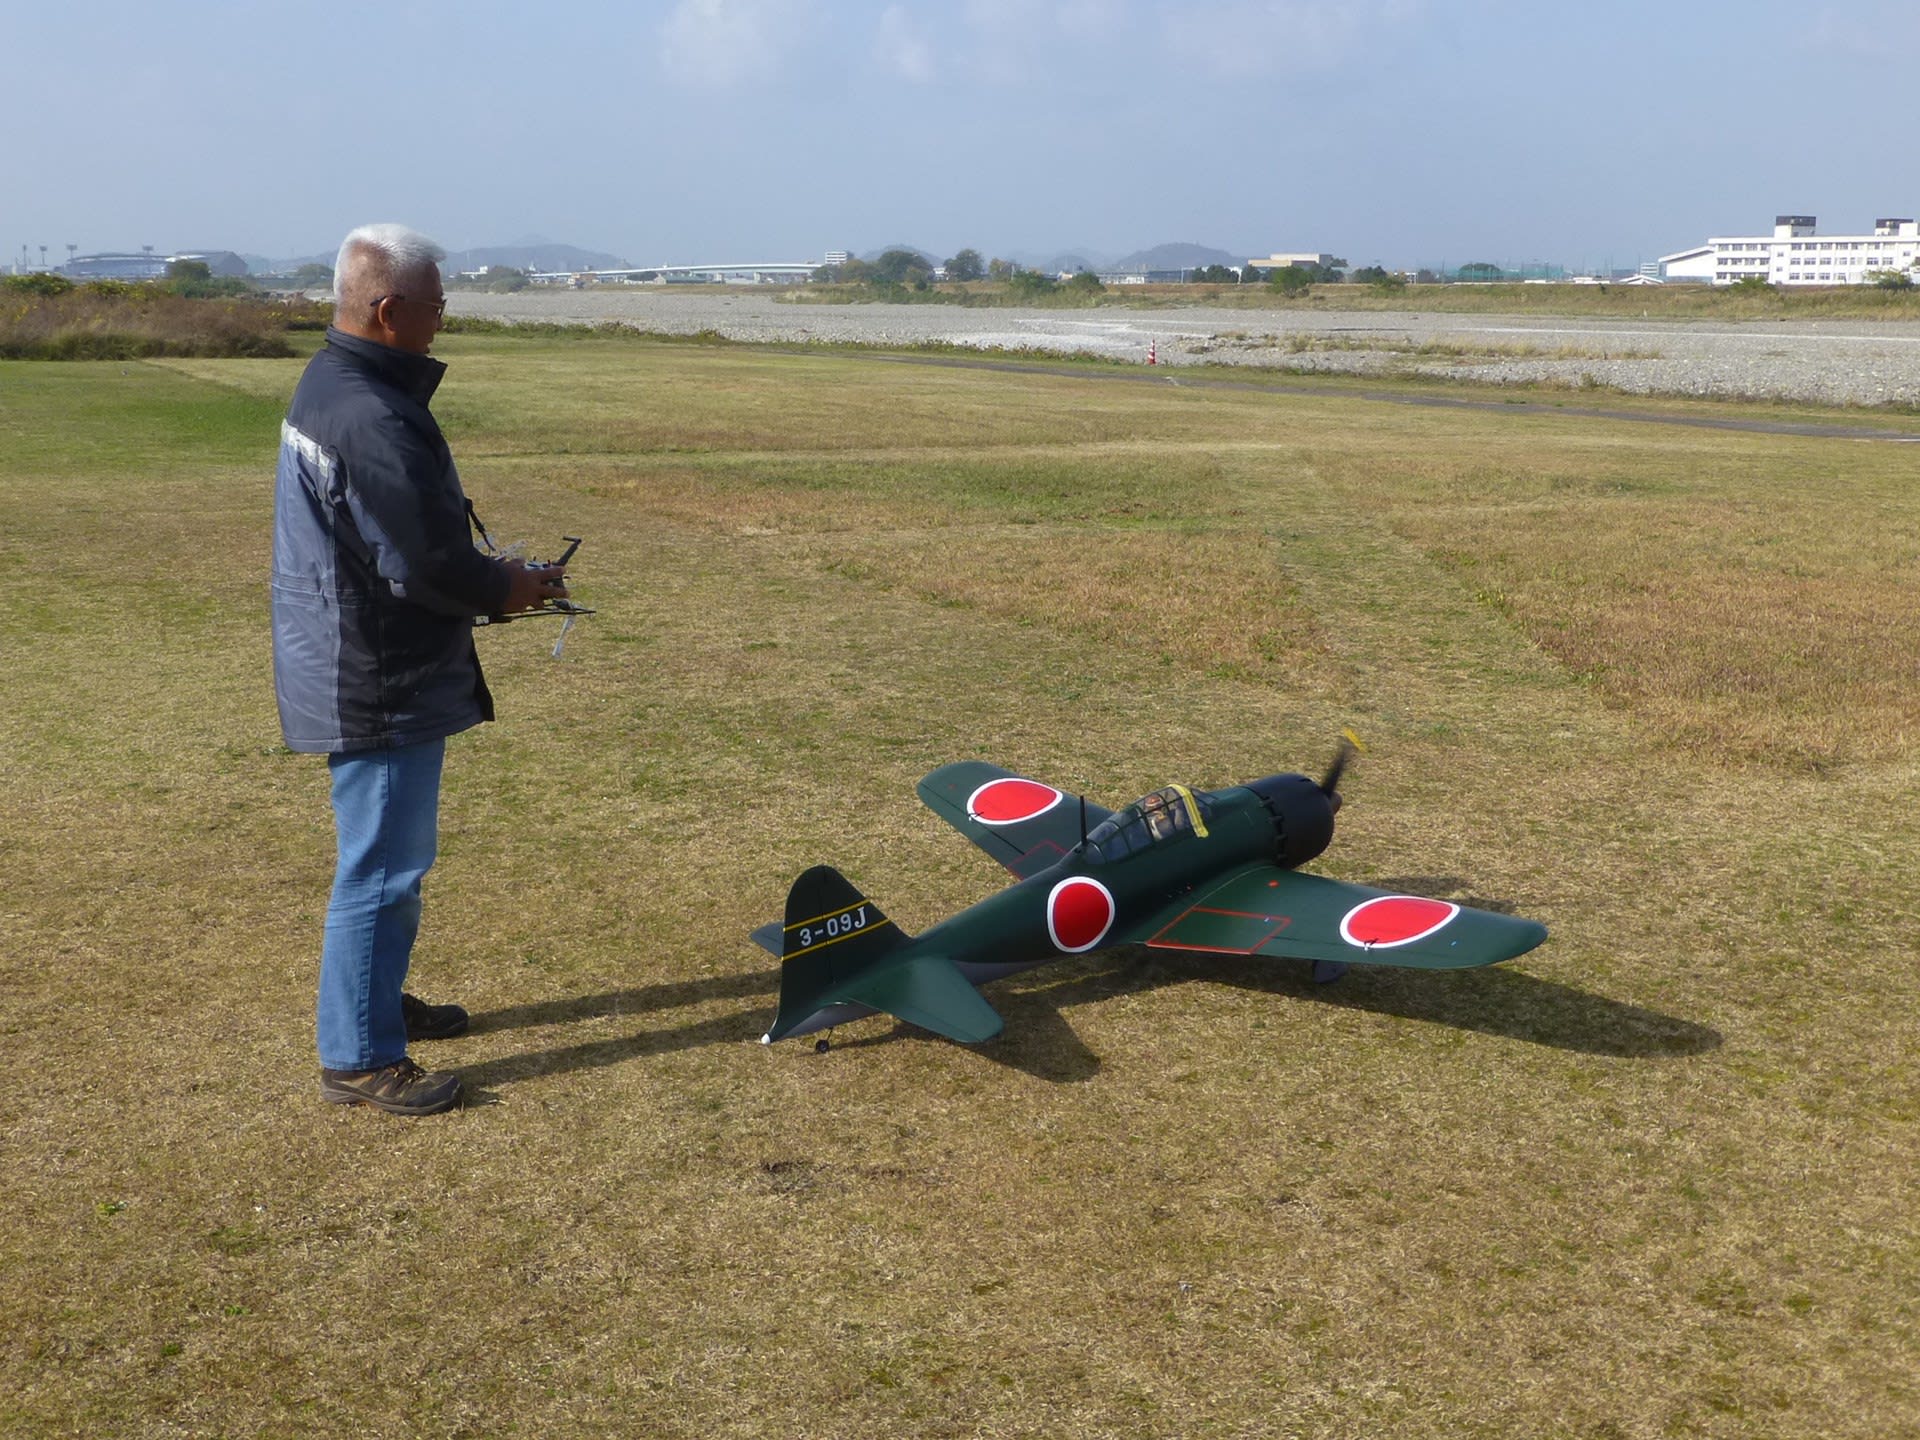 12月1日 小春日和でゼロ戦が飛んだ 愛媛の田舎でrc飛行機 F3aをぼちぼち